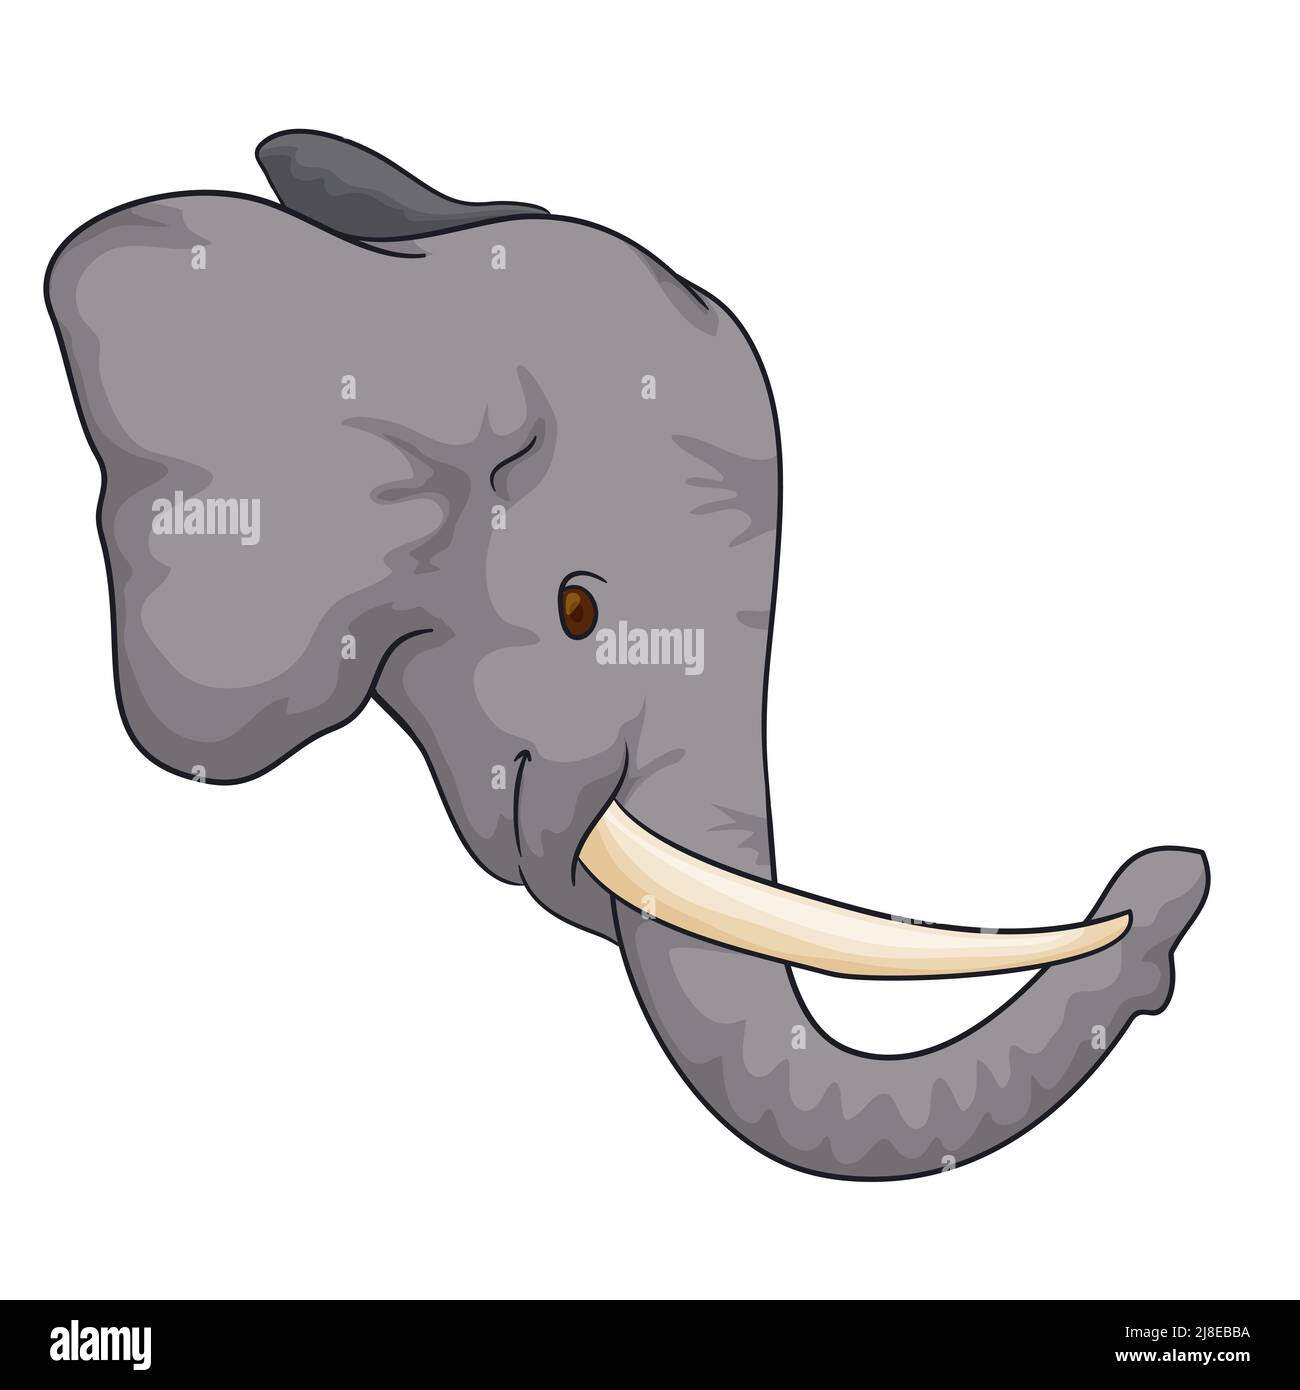 Zarter grauer Elefantenkopf mit lächelnder Geste, langen Stoßzähnen, Rüssel und großen Ohren. Stock Vektor